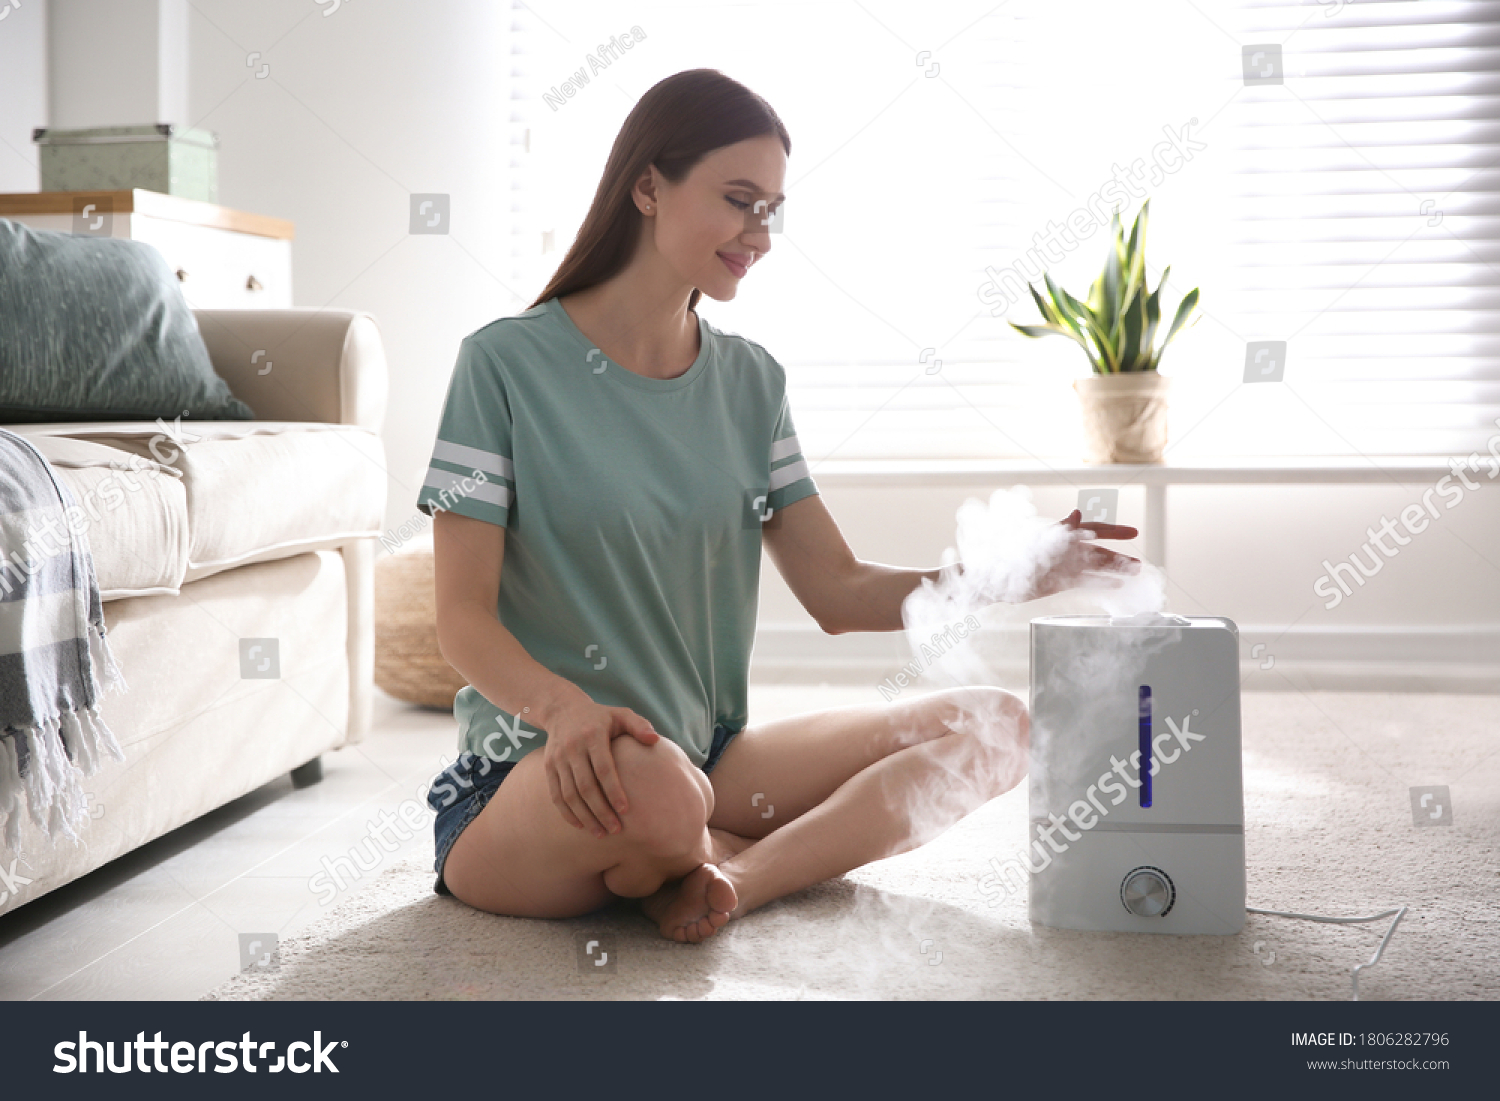 Woman near modern air humidifier at home #1806282796